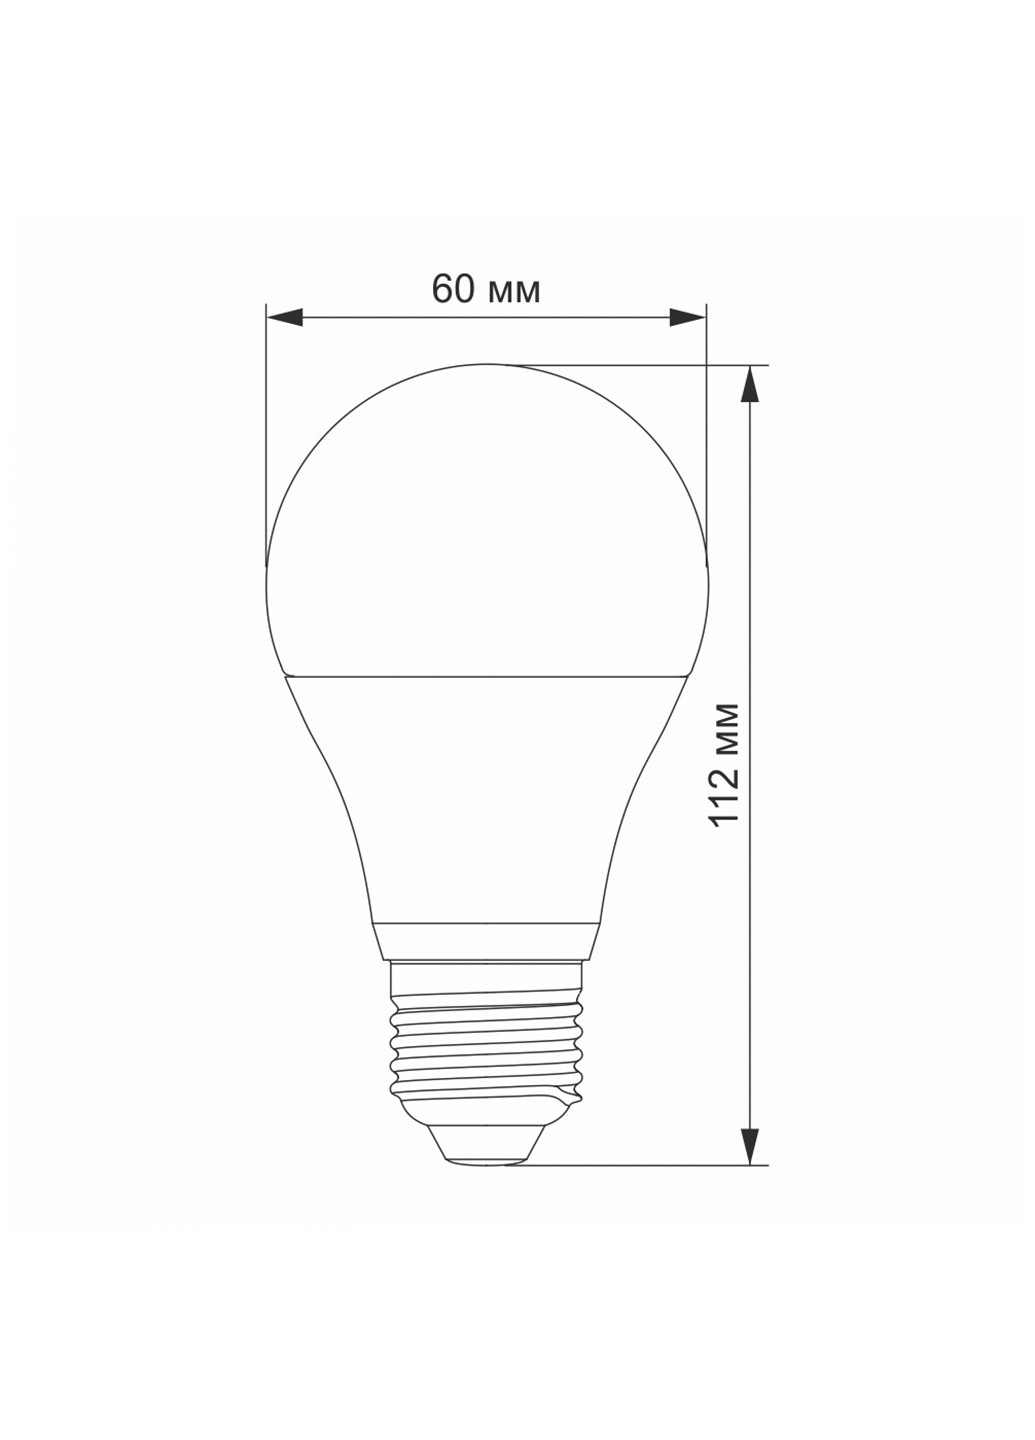 Лампа VIDEX A60e 10W E27 4100K 220V White Led (255259005)